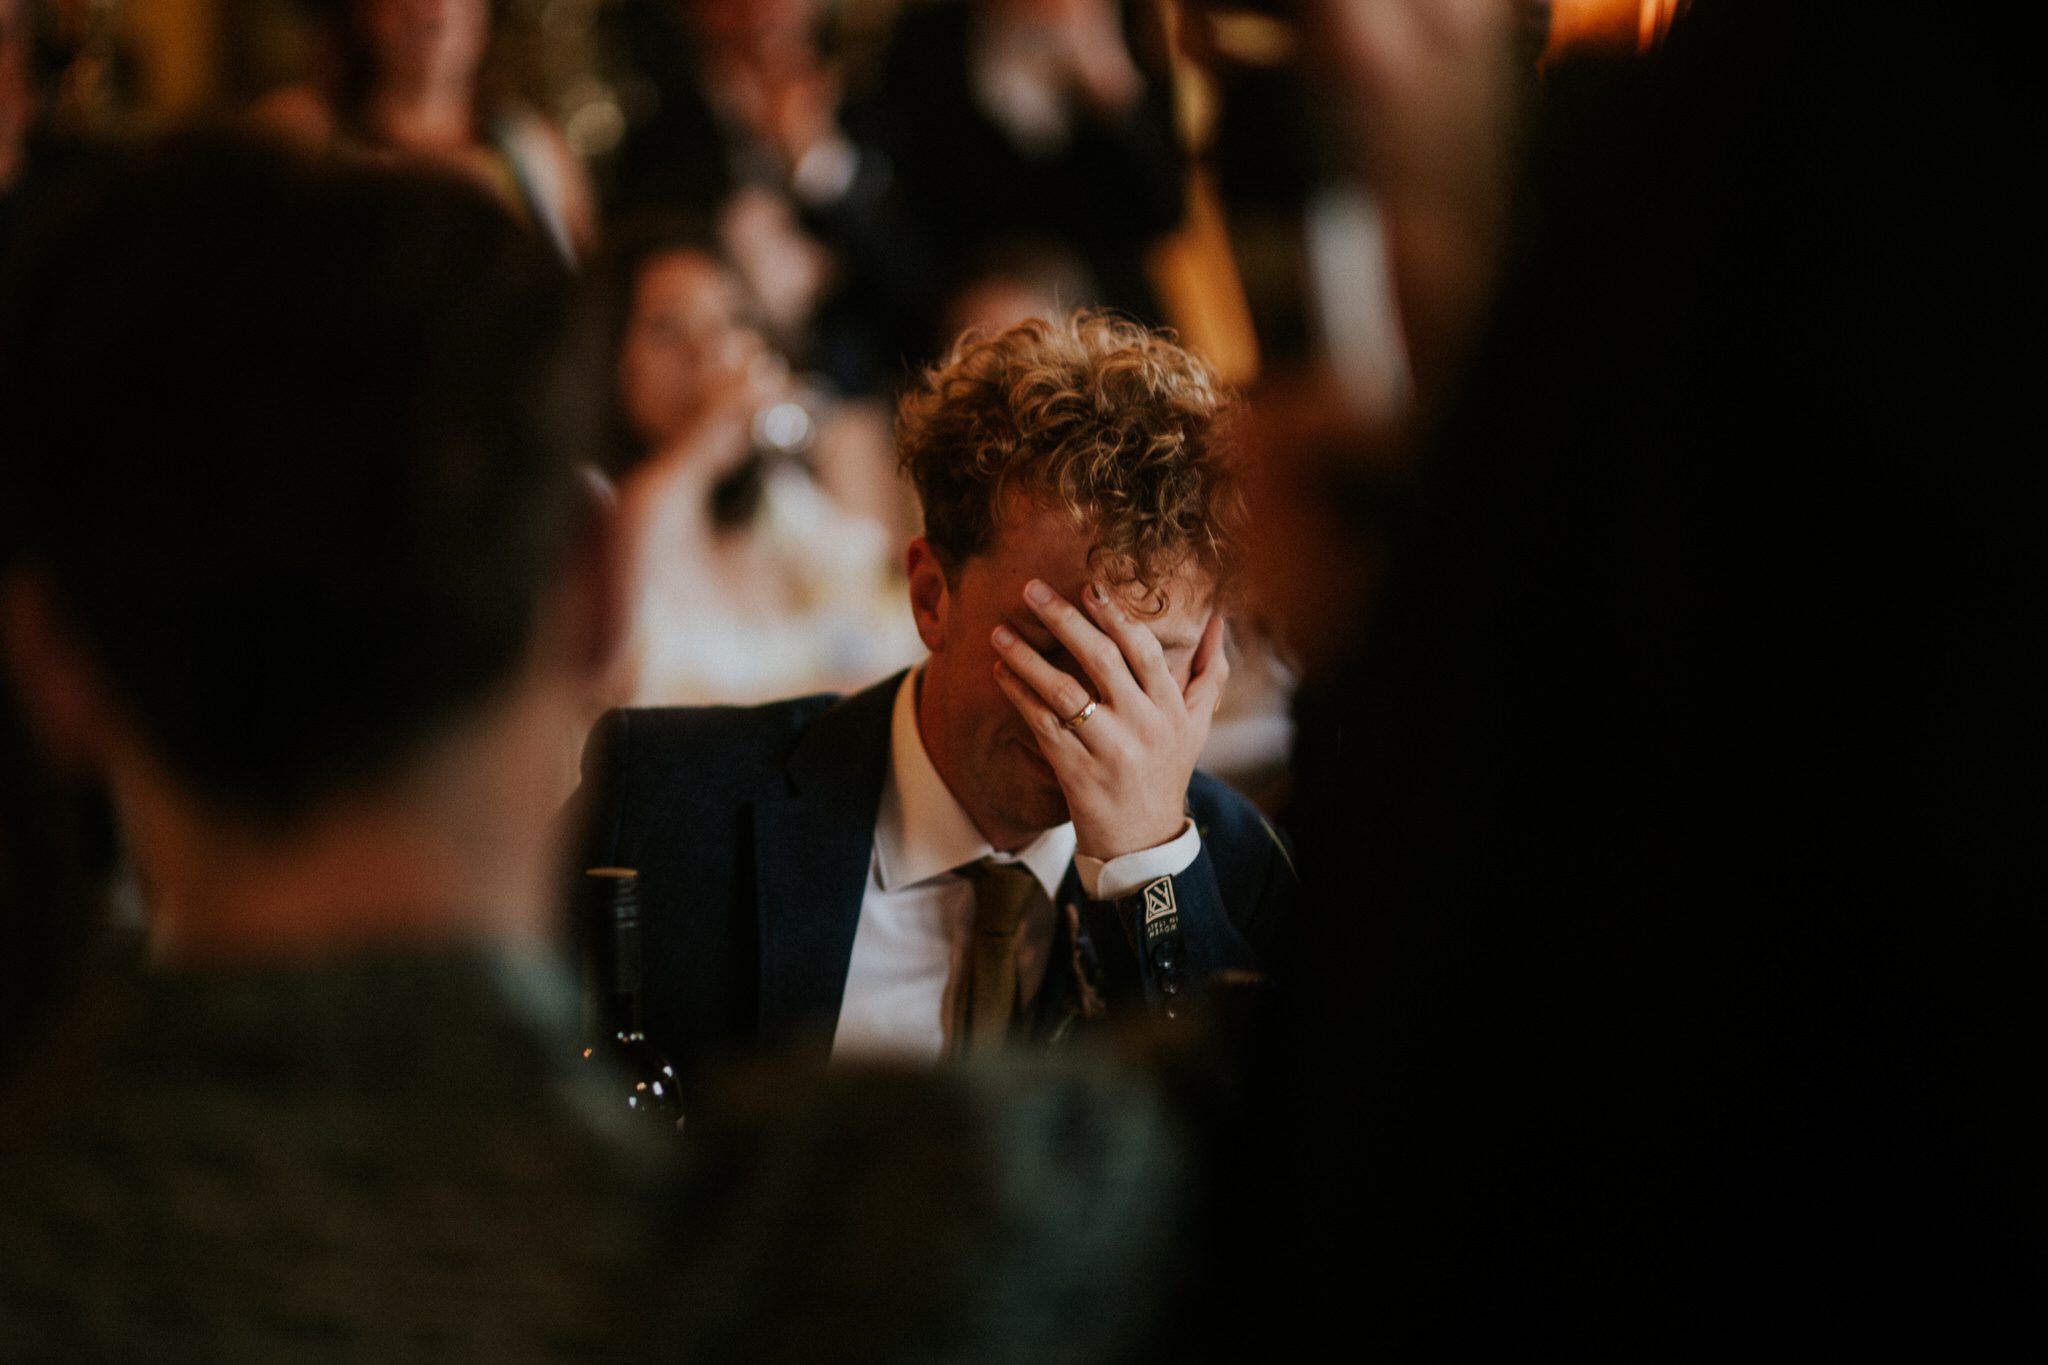 A groom reacts to speeches at a wedding at Huntsham Court in Devon